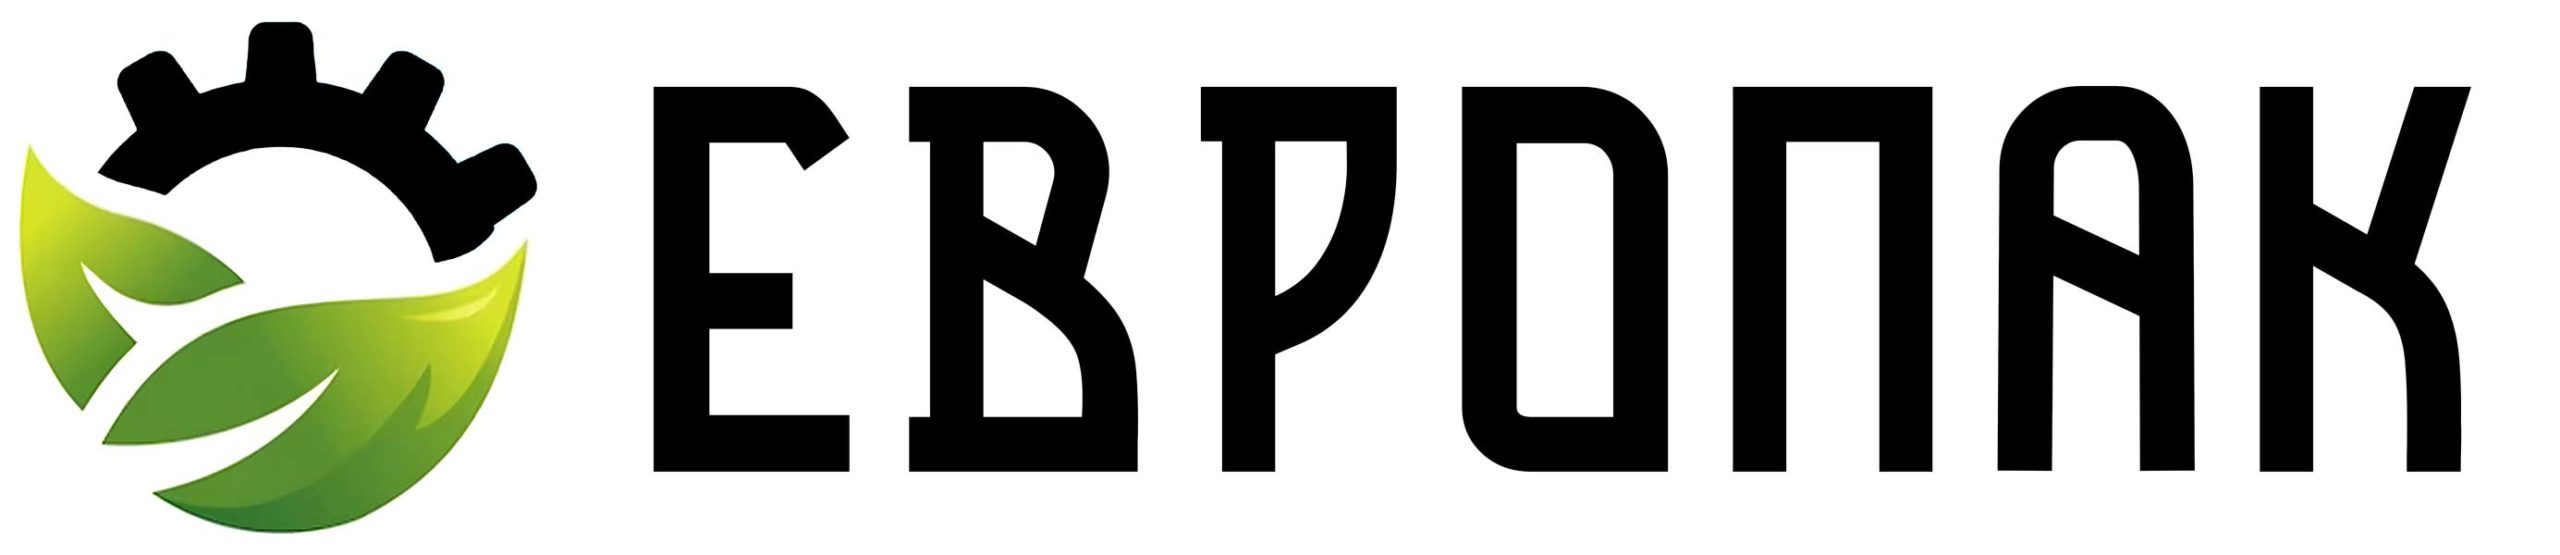 Логотип ООО Европак Саранск. Компания по продаже сельхозтехники и спецтехники